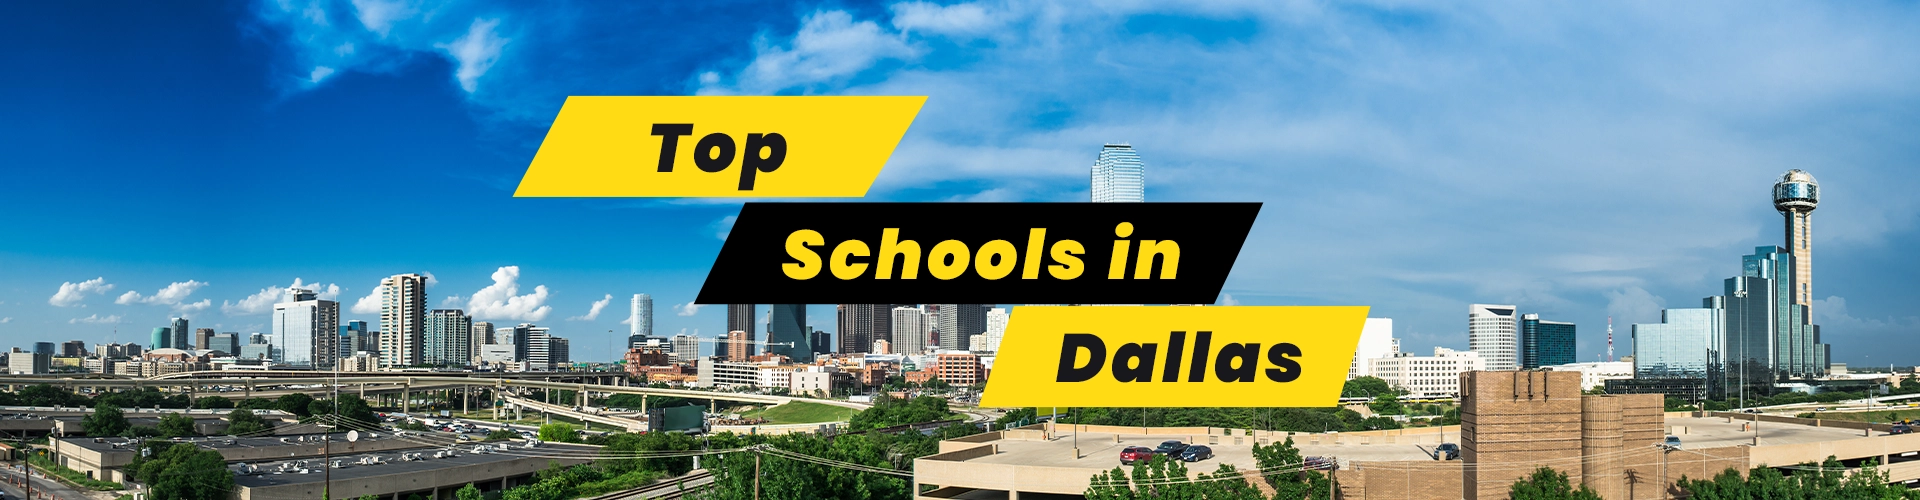 Top 10 Schools in Dallas